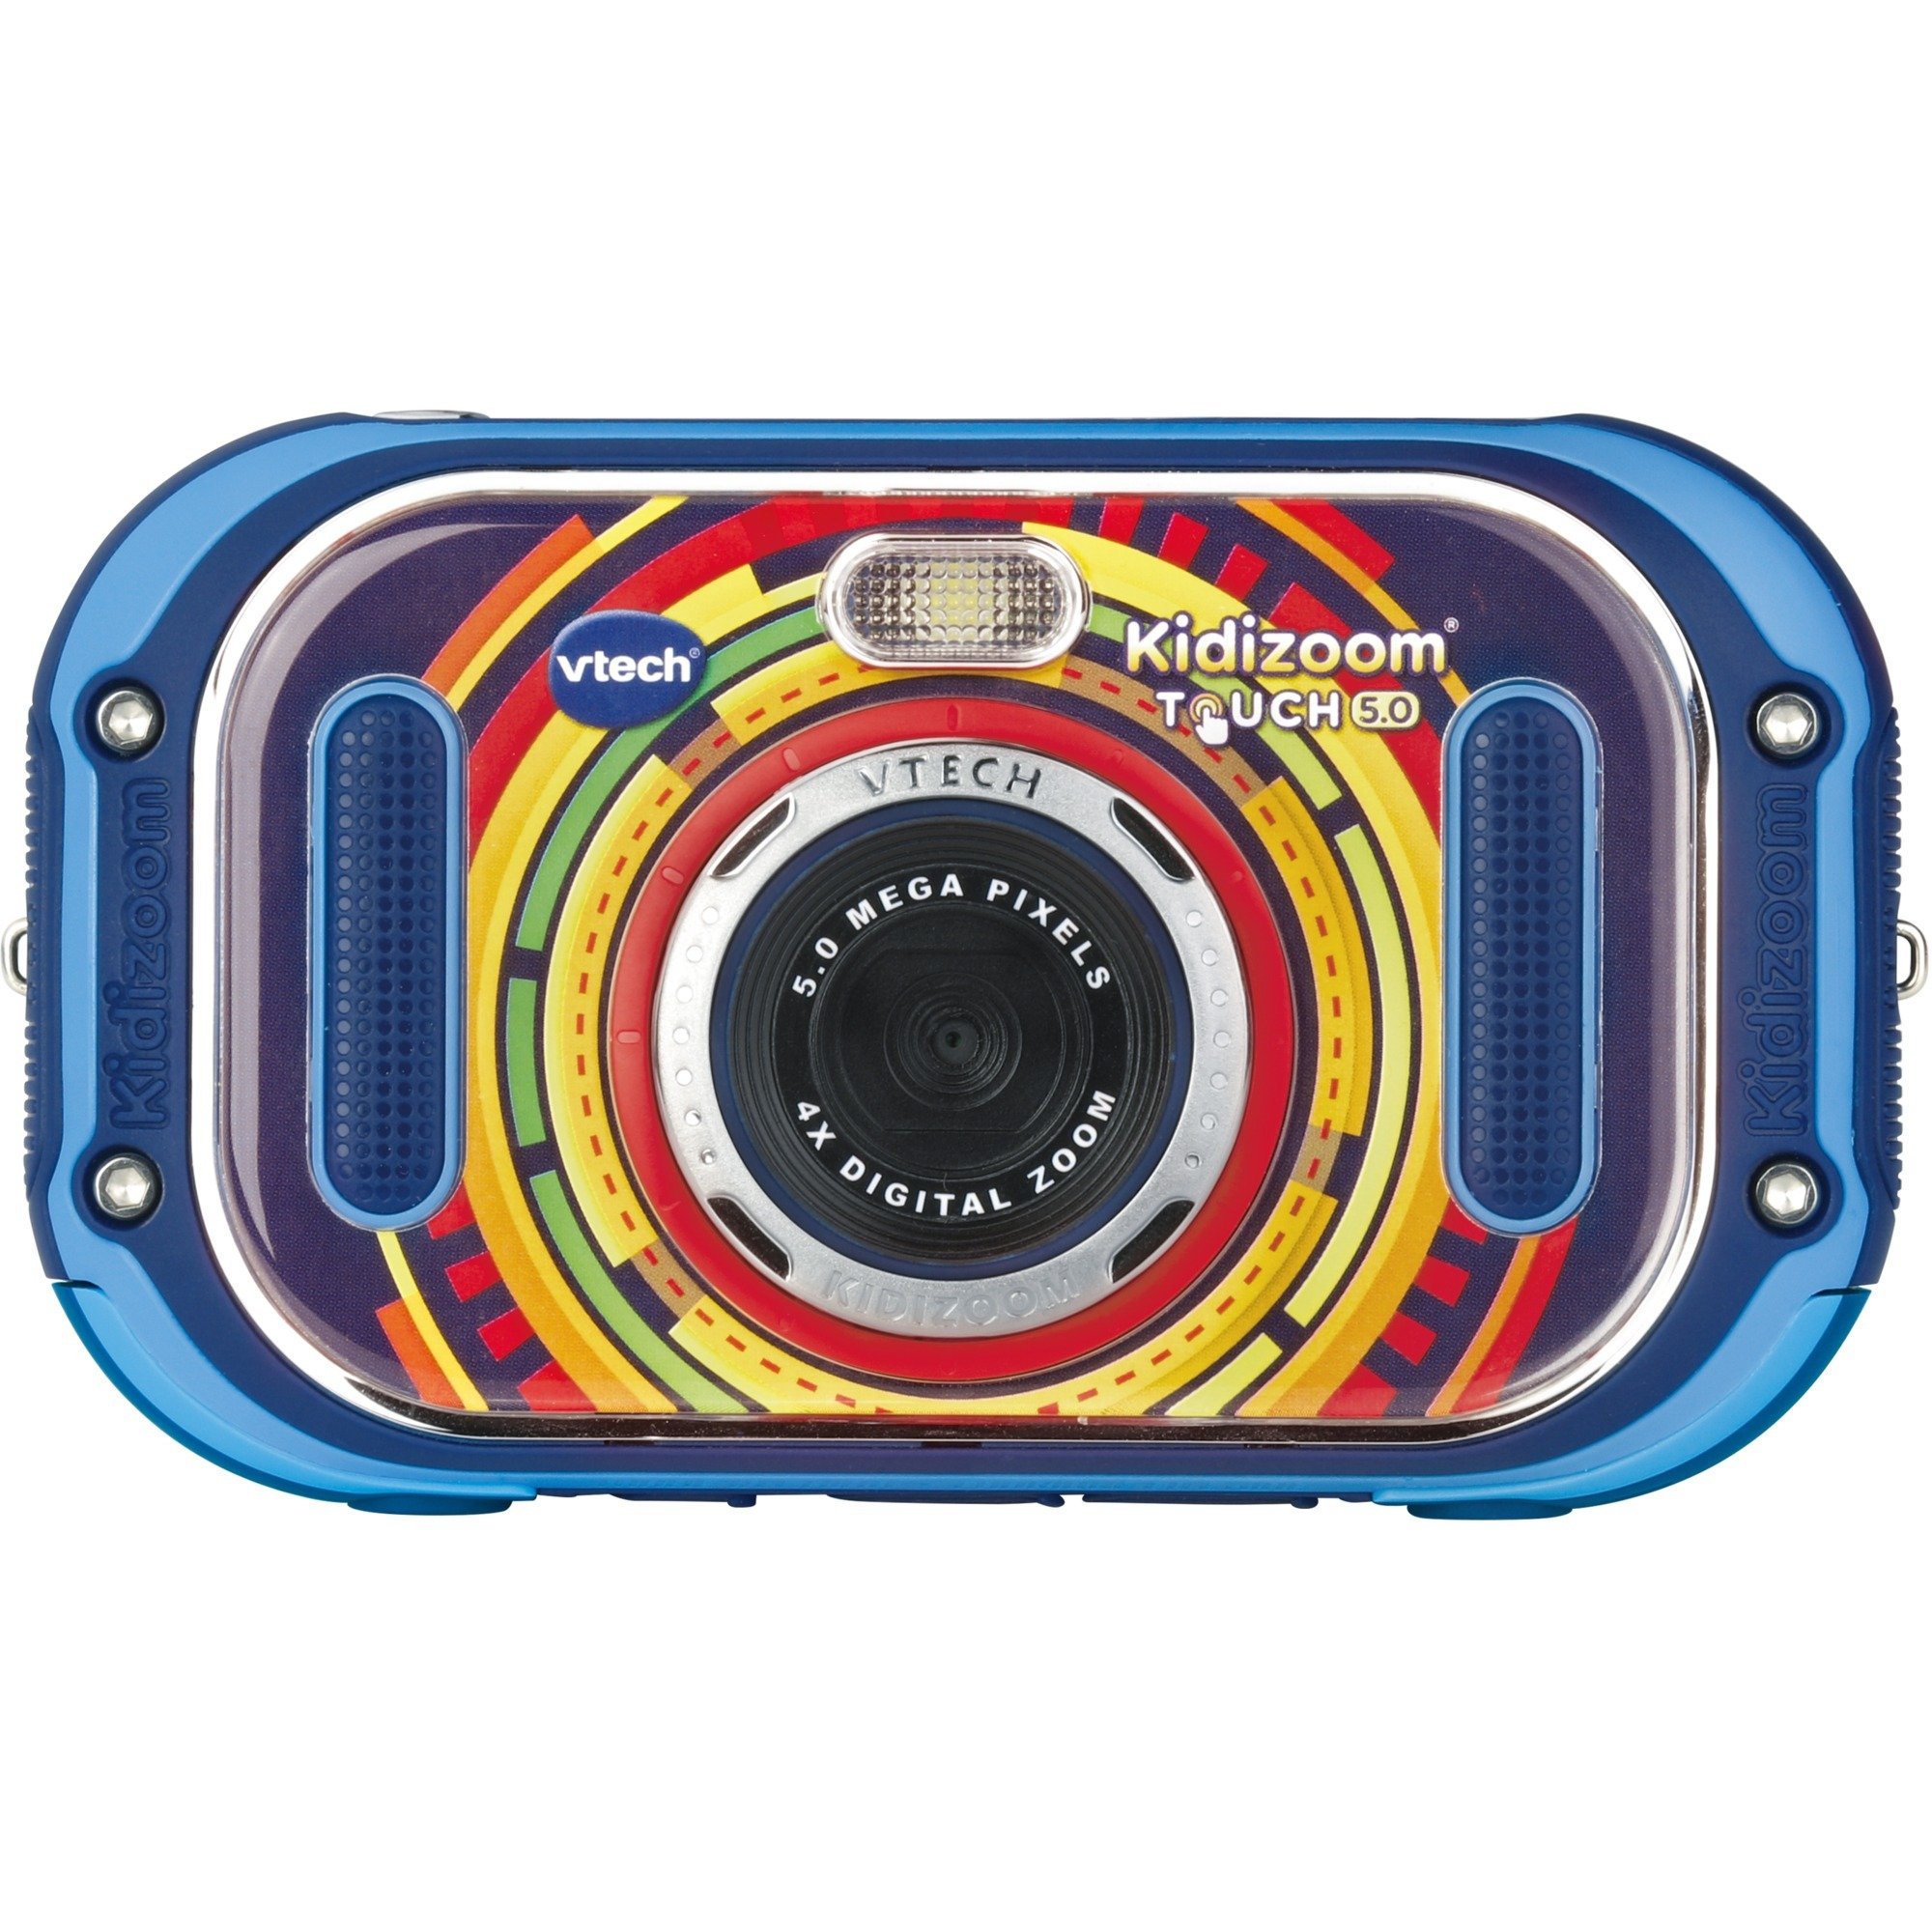 Image of Alternate - KidiZoom Touch 5.0, Digitalkamera online einkaufen bei Alternate